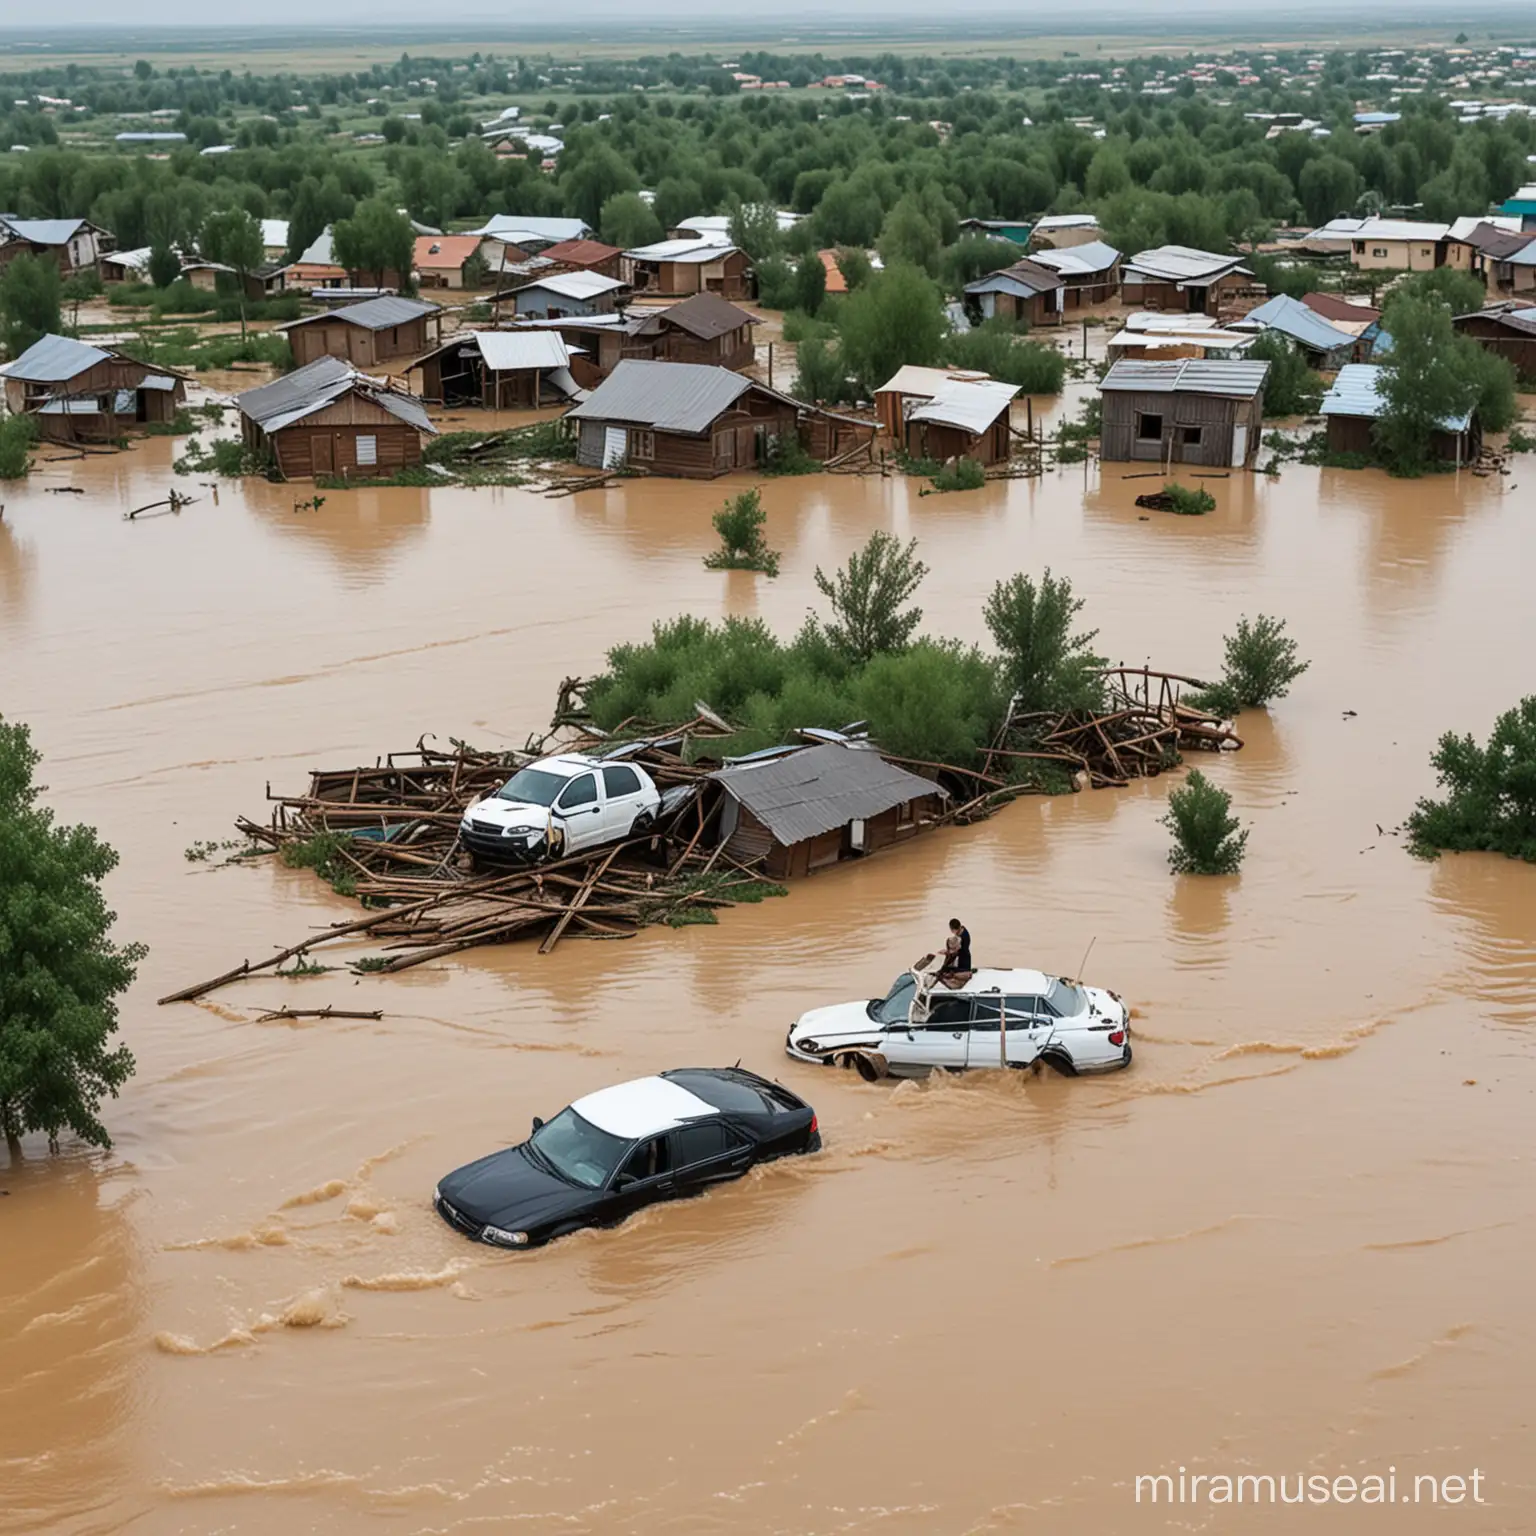 страшное наводнение в казахстане, затопленные дома, люди на крышах домов, плавающие в воде машины, животные, сидящие на досках посреди воды., деревья, торчащие из воды